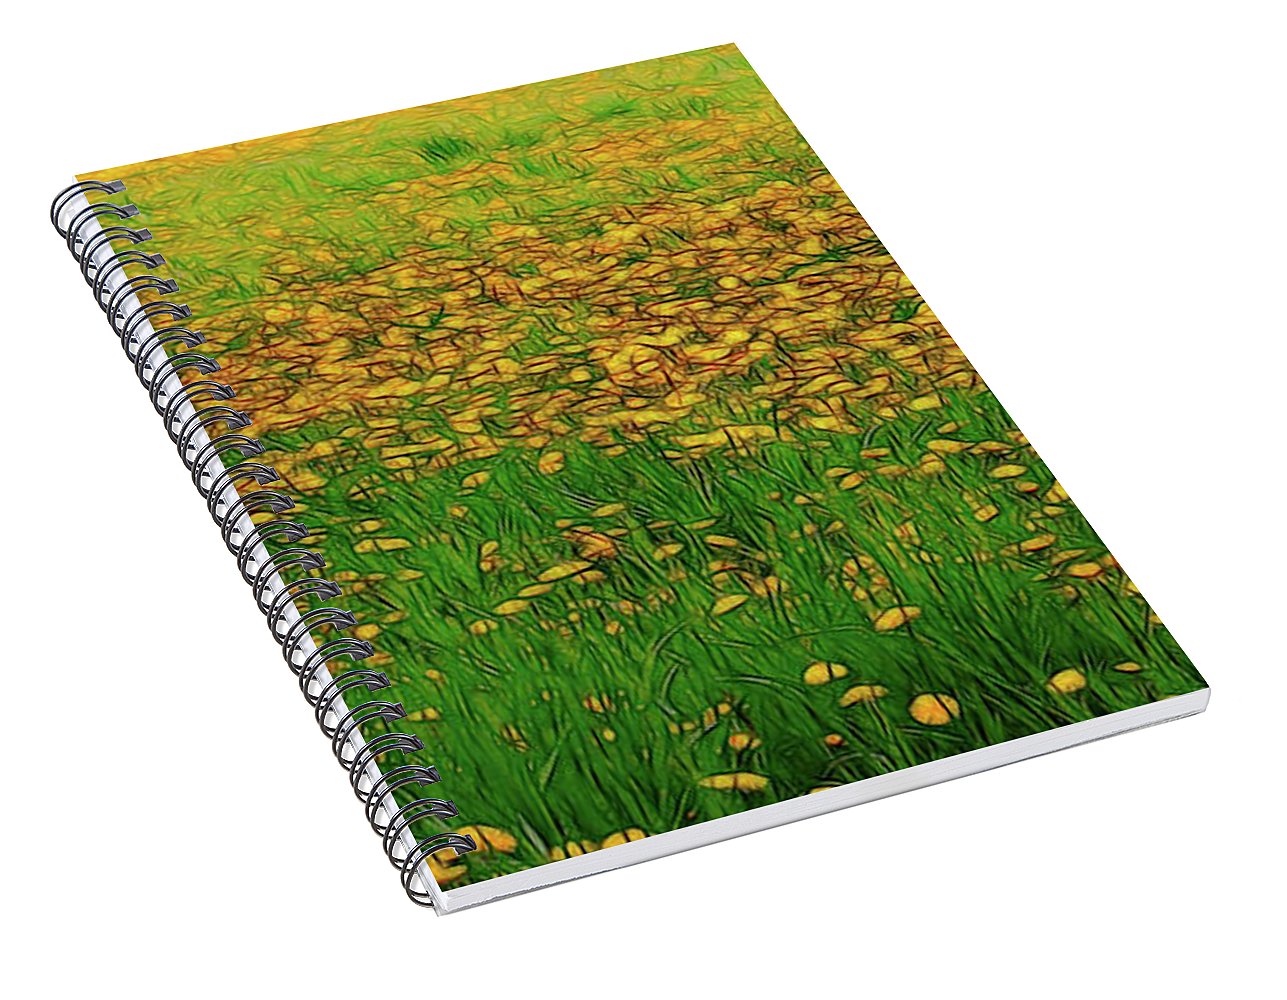 Dandelion Field - Spiral Notebook